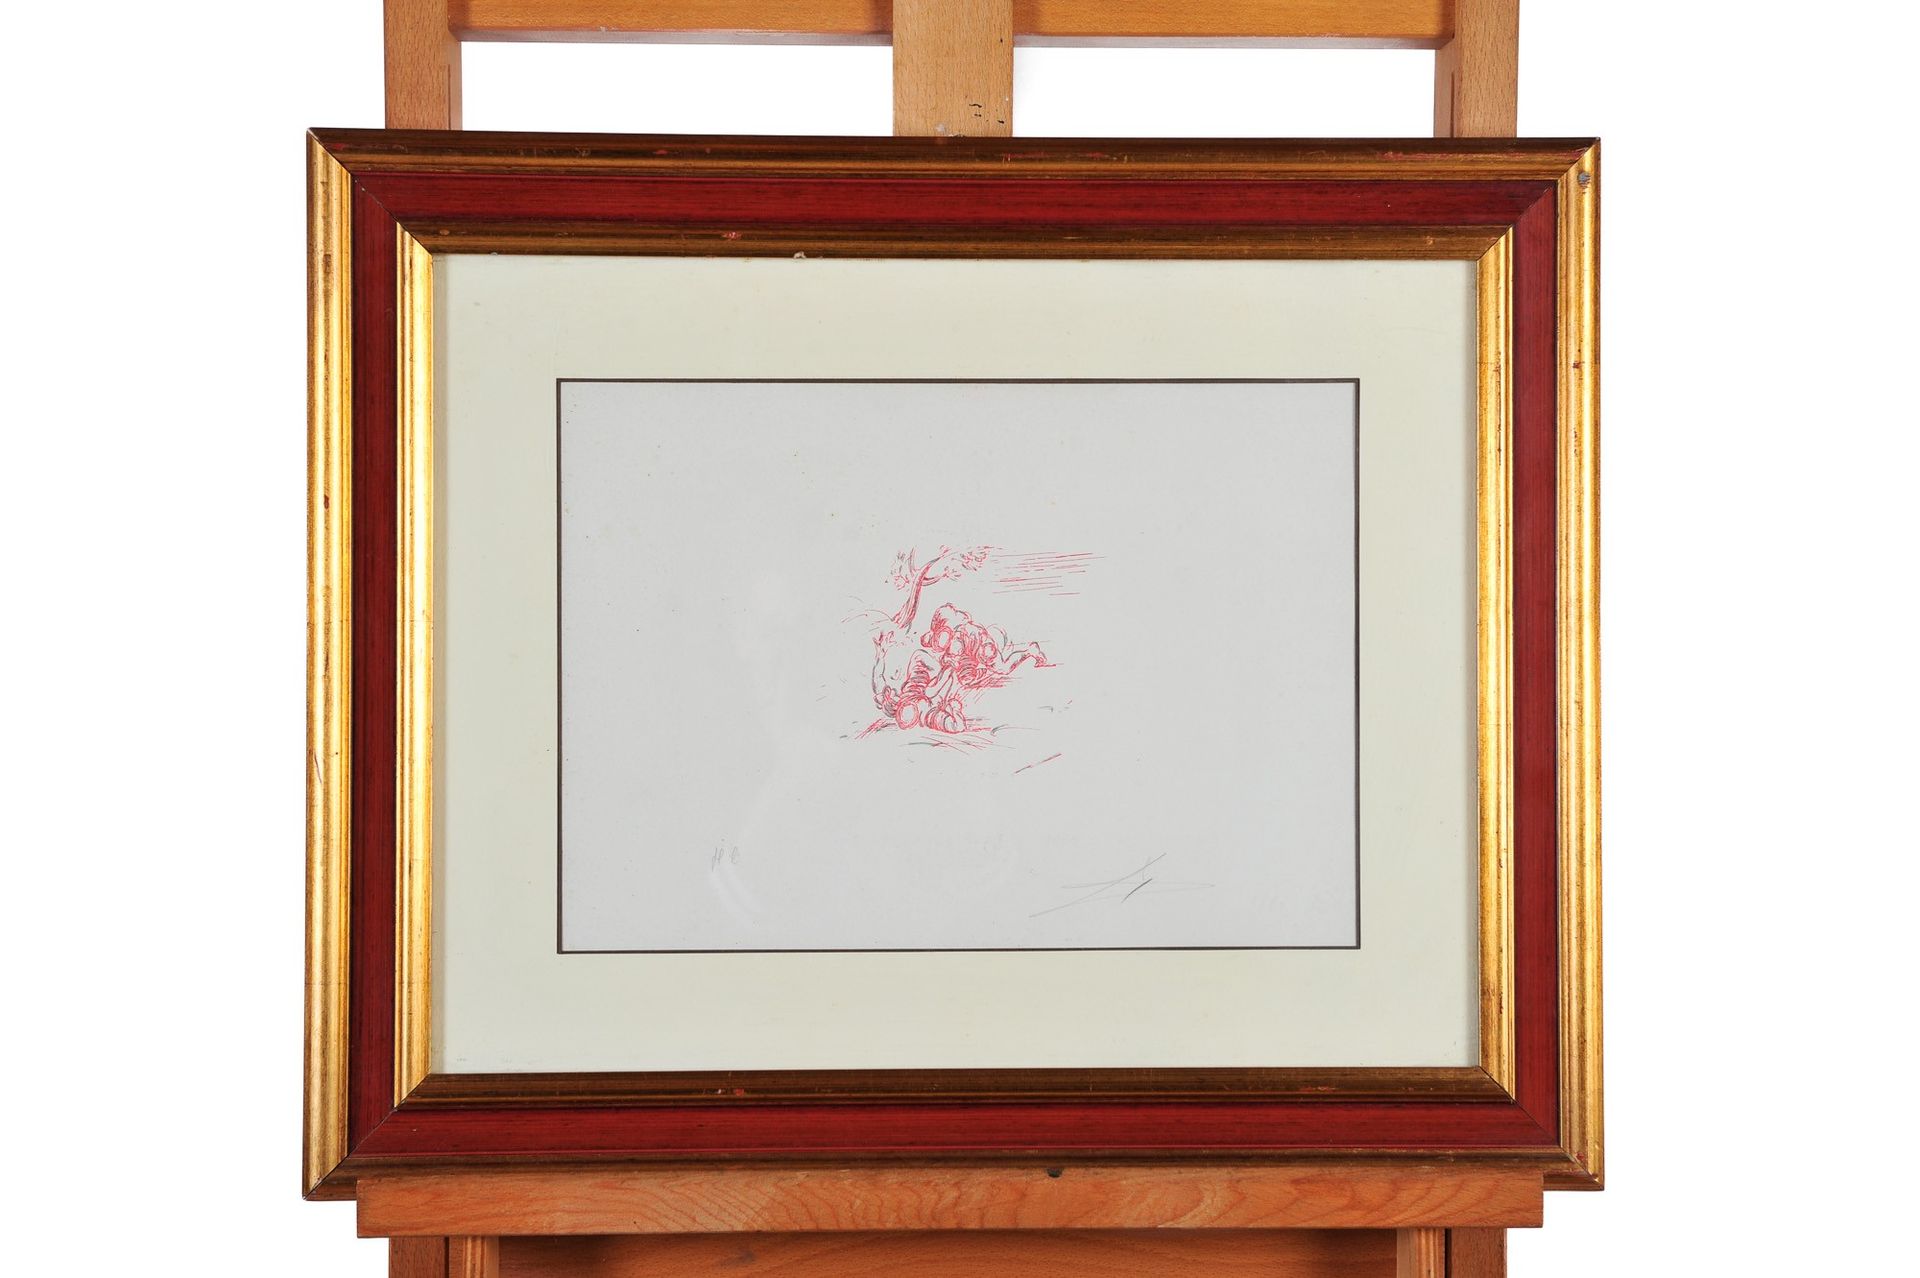 Salvador Dali - Wrestlers Lithographie sur papier 
25 x 34cm
Dans le cadre.